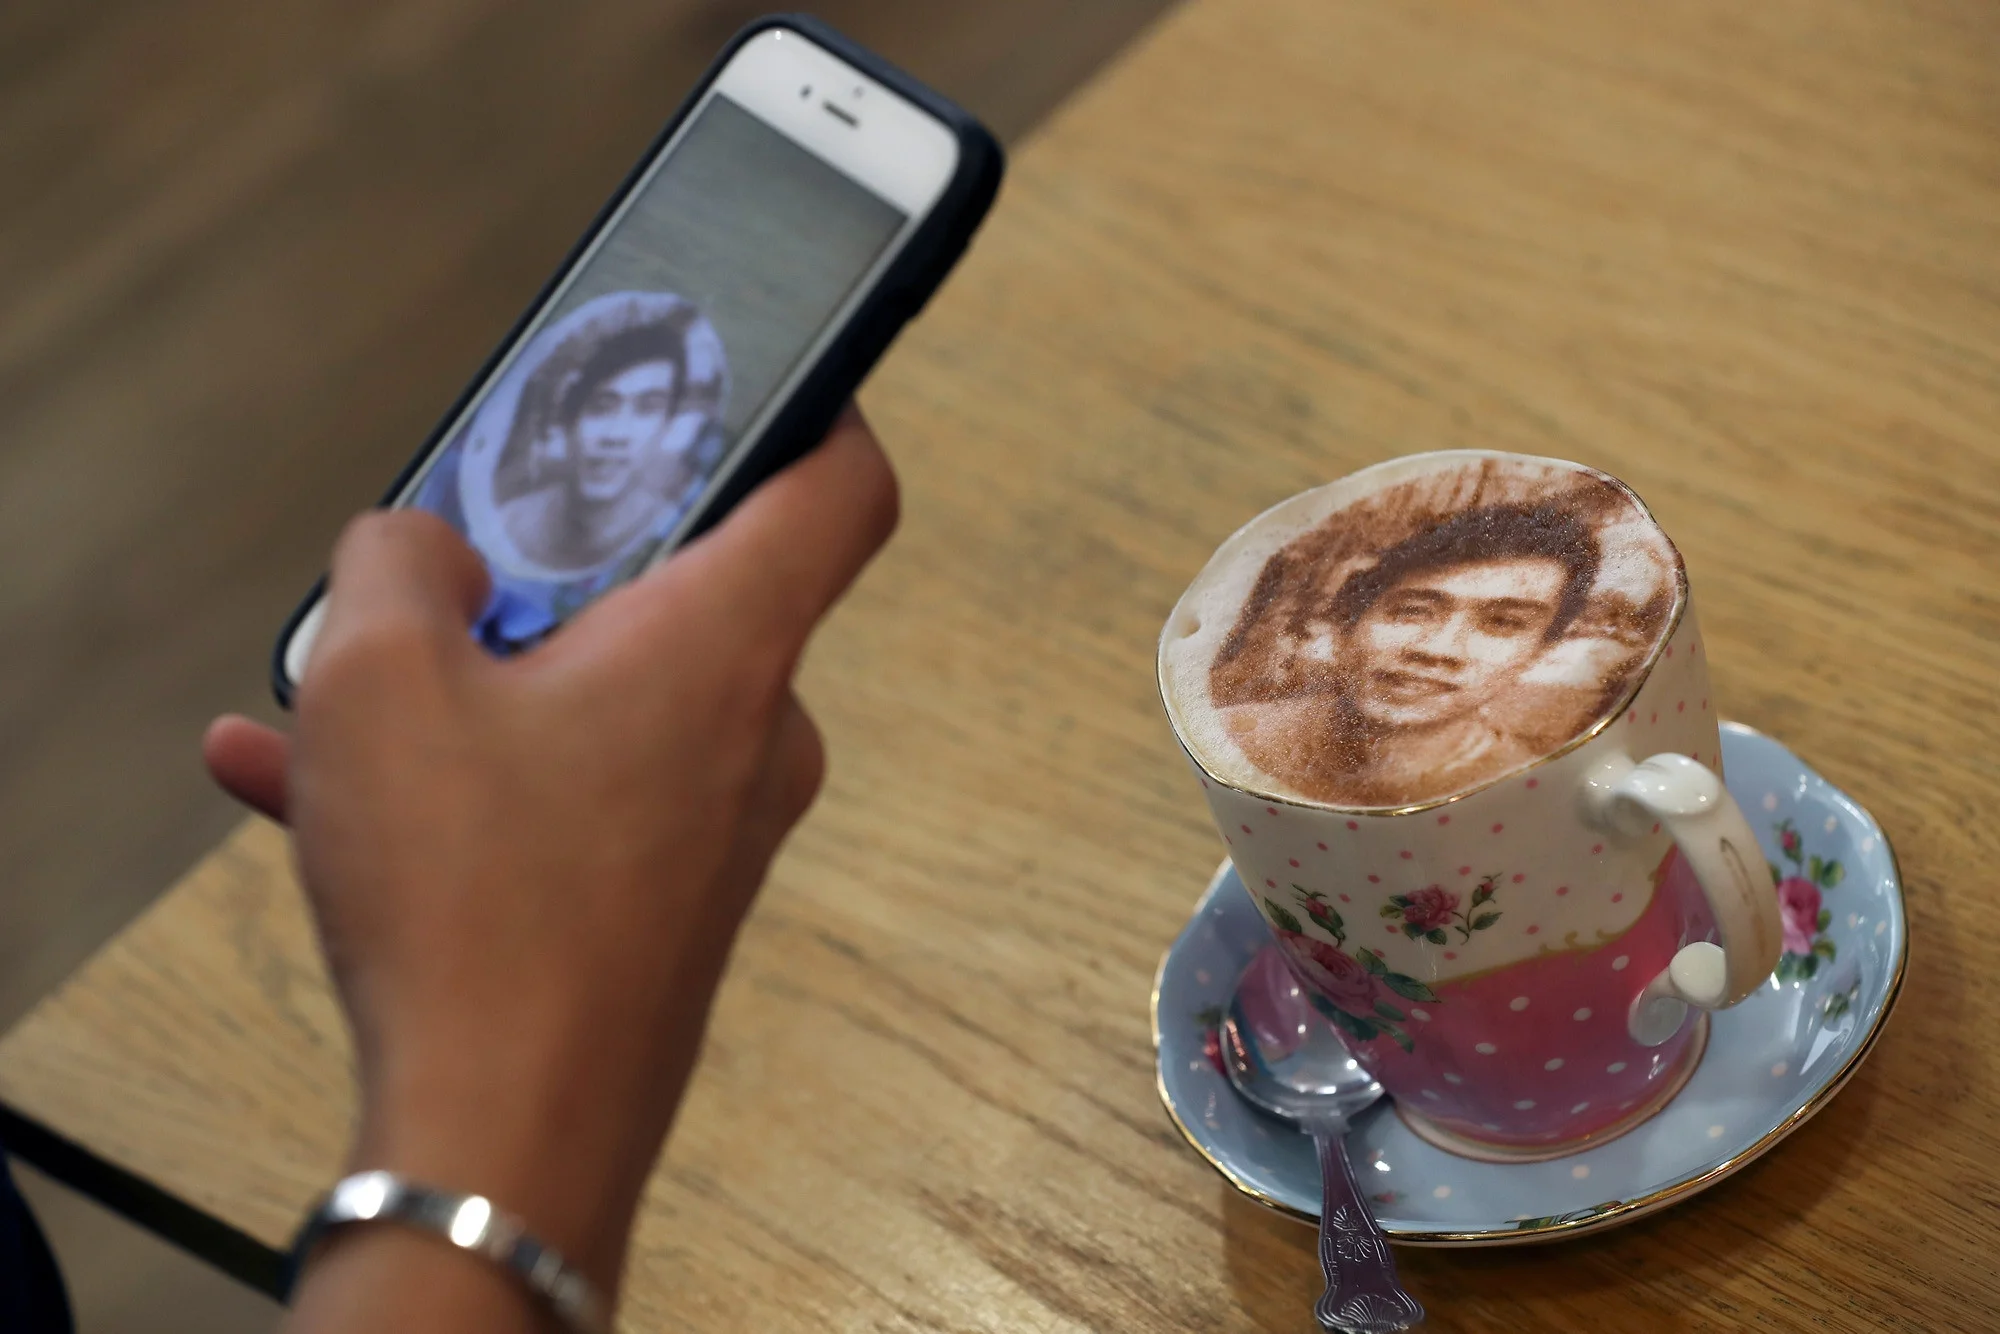 Селфичино: в Лондоне открылось кафе, где можно выпить кофе со своим фото - фото 362103